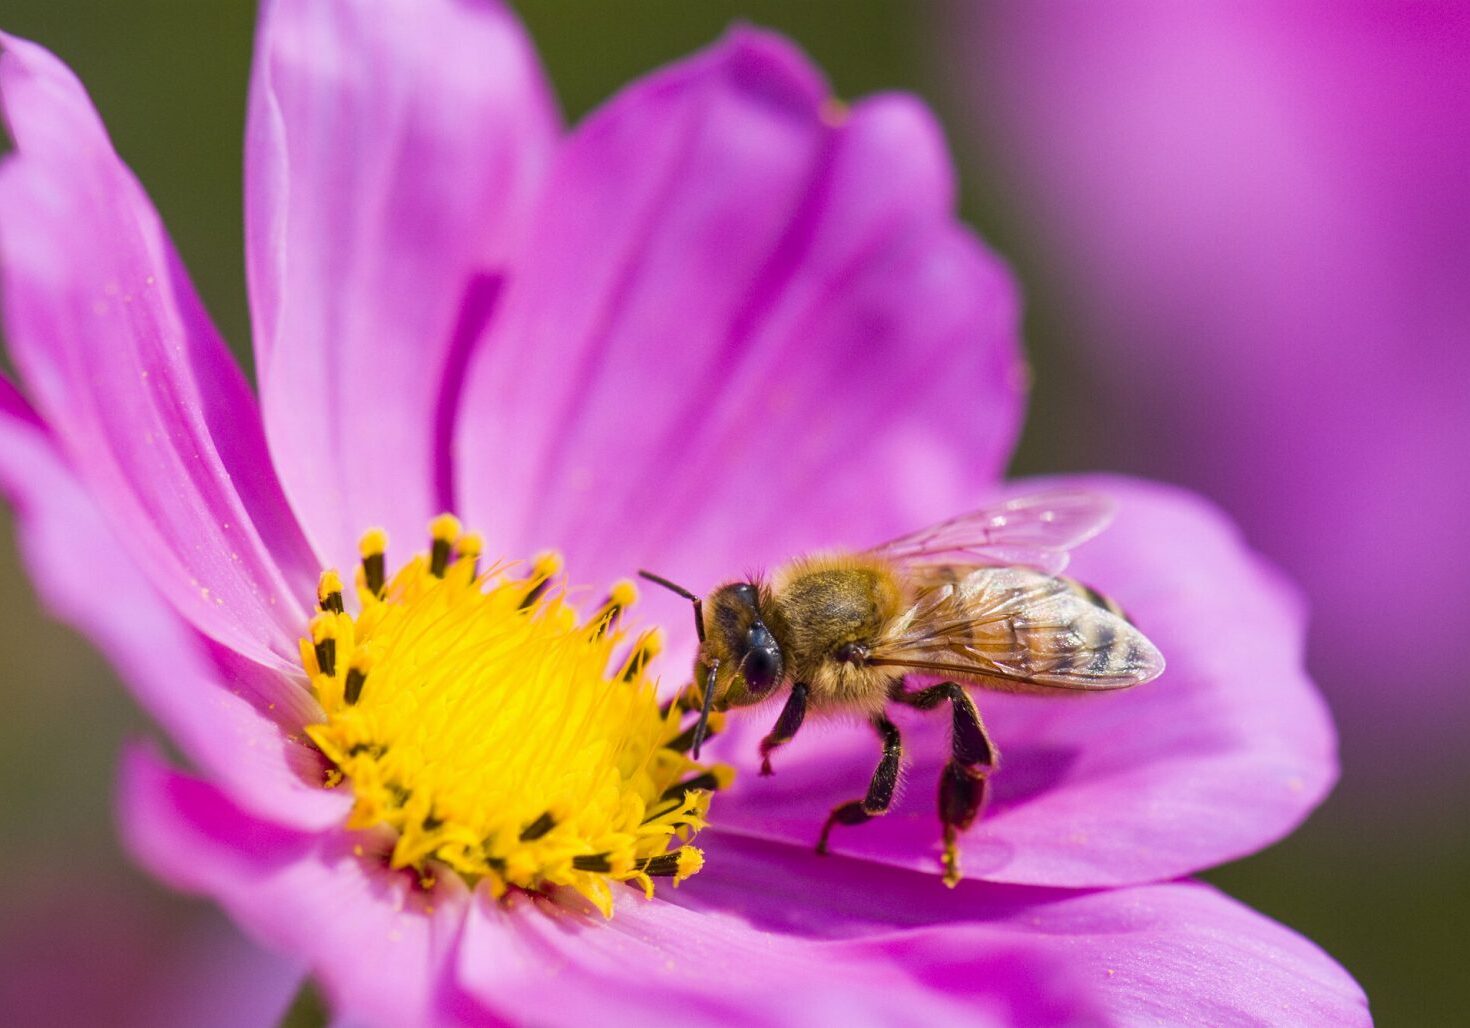 Bees_wasps